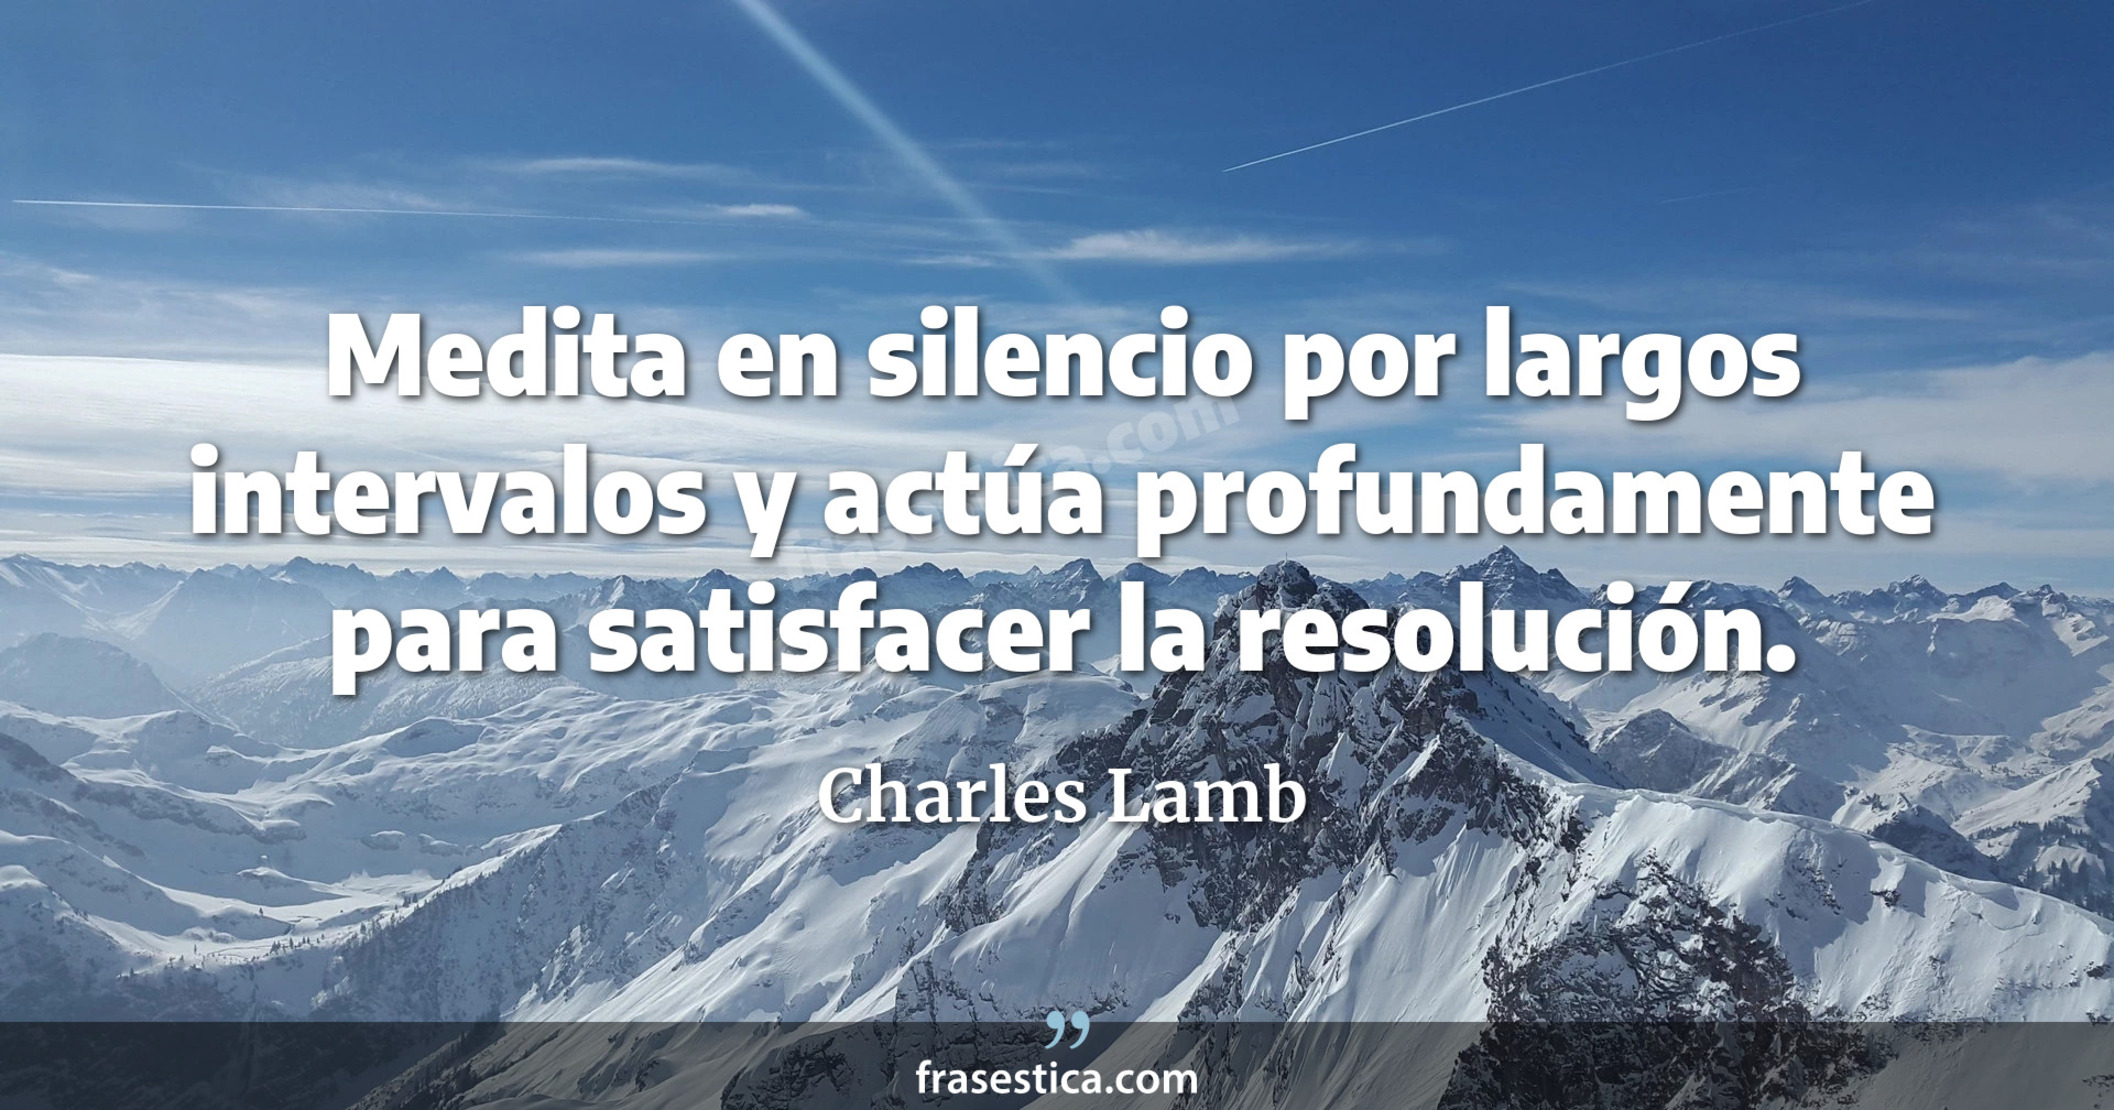 Medita en silencio por largos intervalos y actúa profundamente para satisfacer la resolución. - Charles Lamb